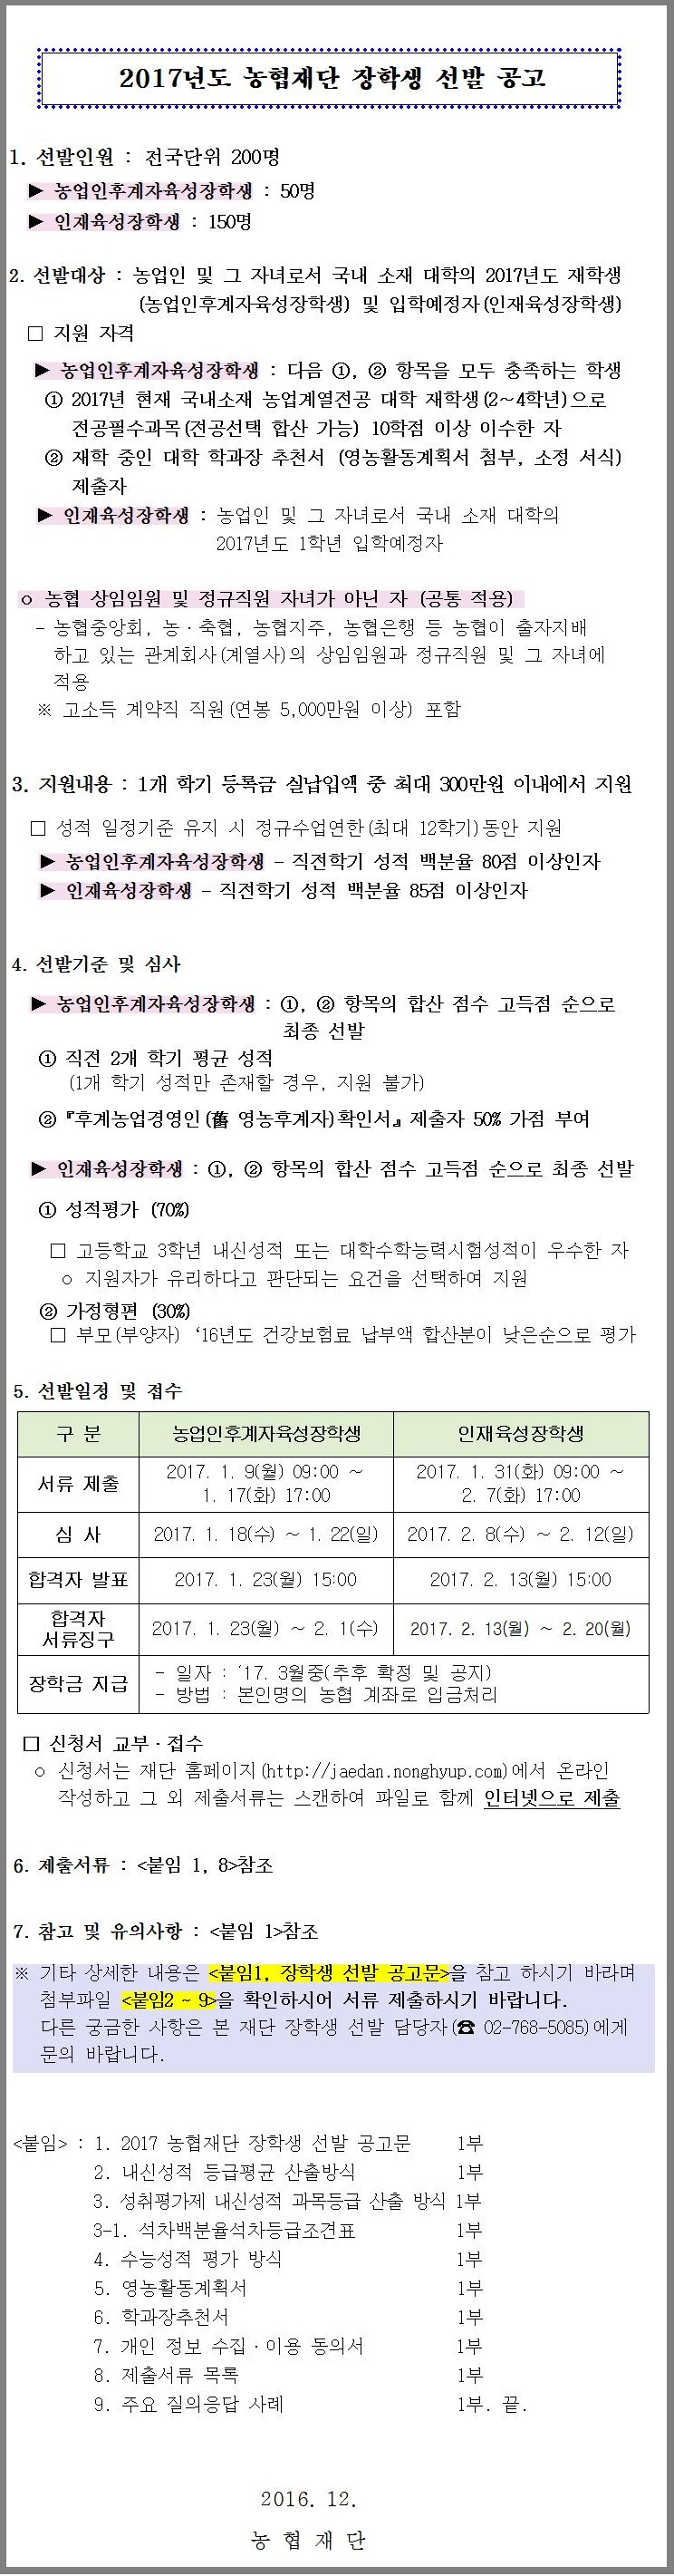 2017년도 농협재단 장학생 선발 안내-기한연장